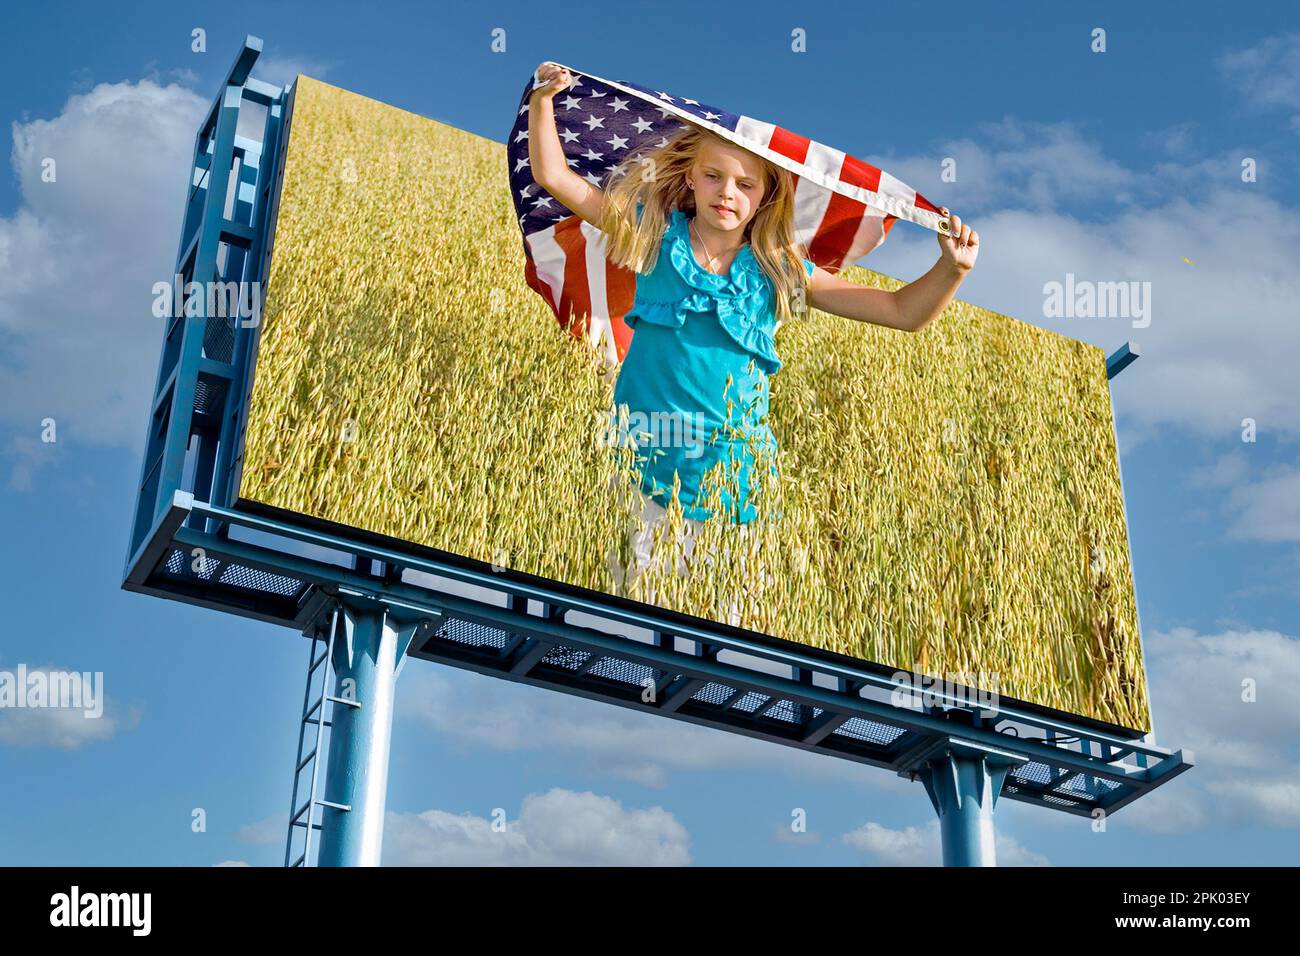 Foto de cartelera de una joven caucásica corriendo con una bandera americana en un campo de trigo con fondo de cielo Foto de stock